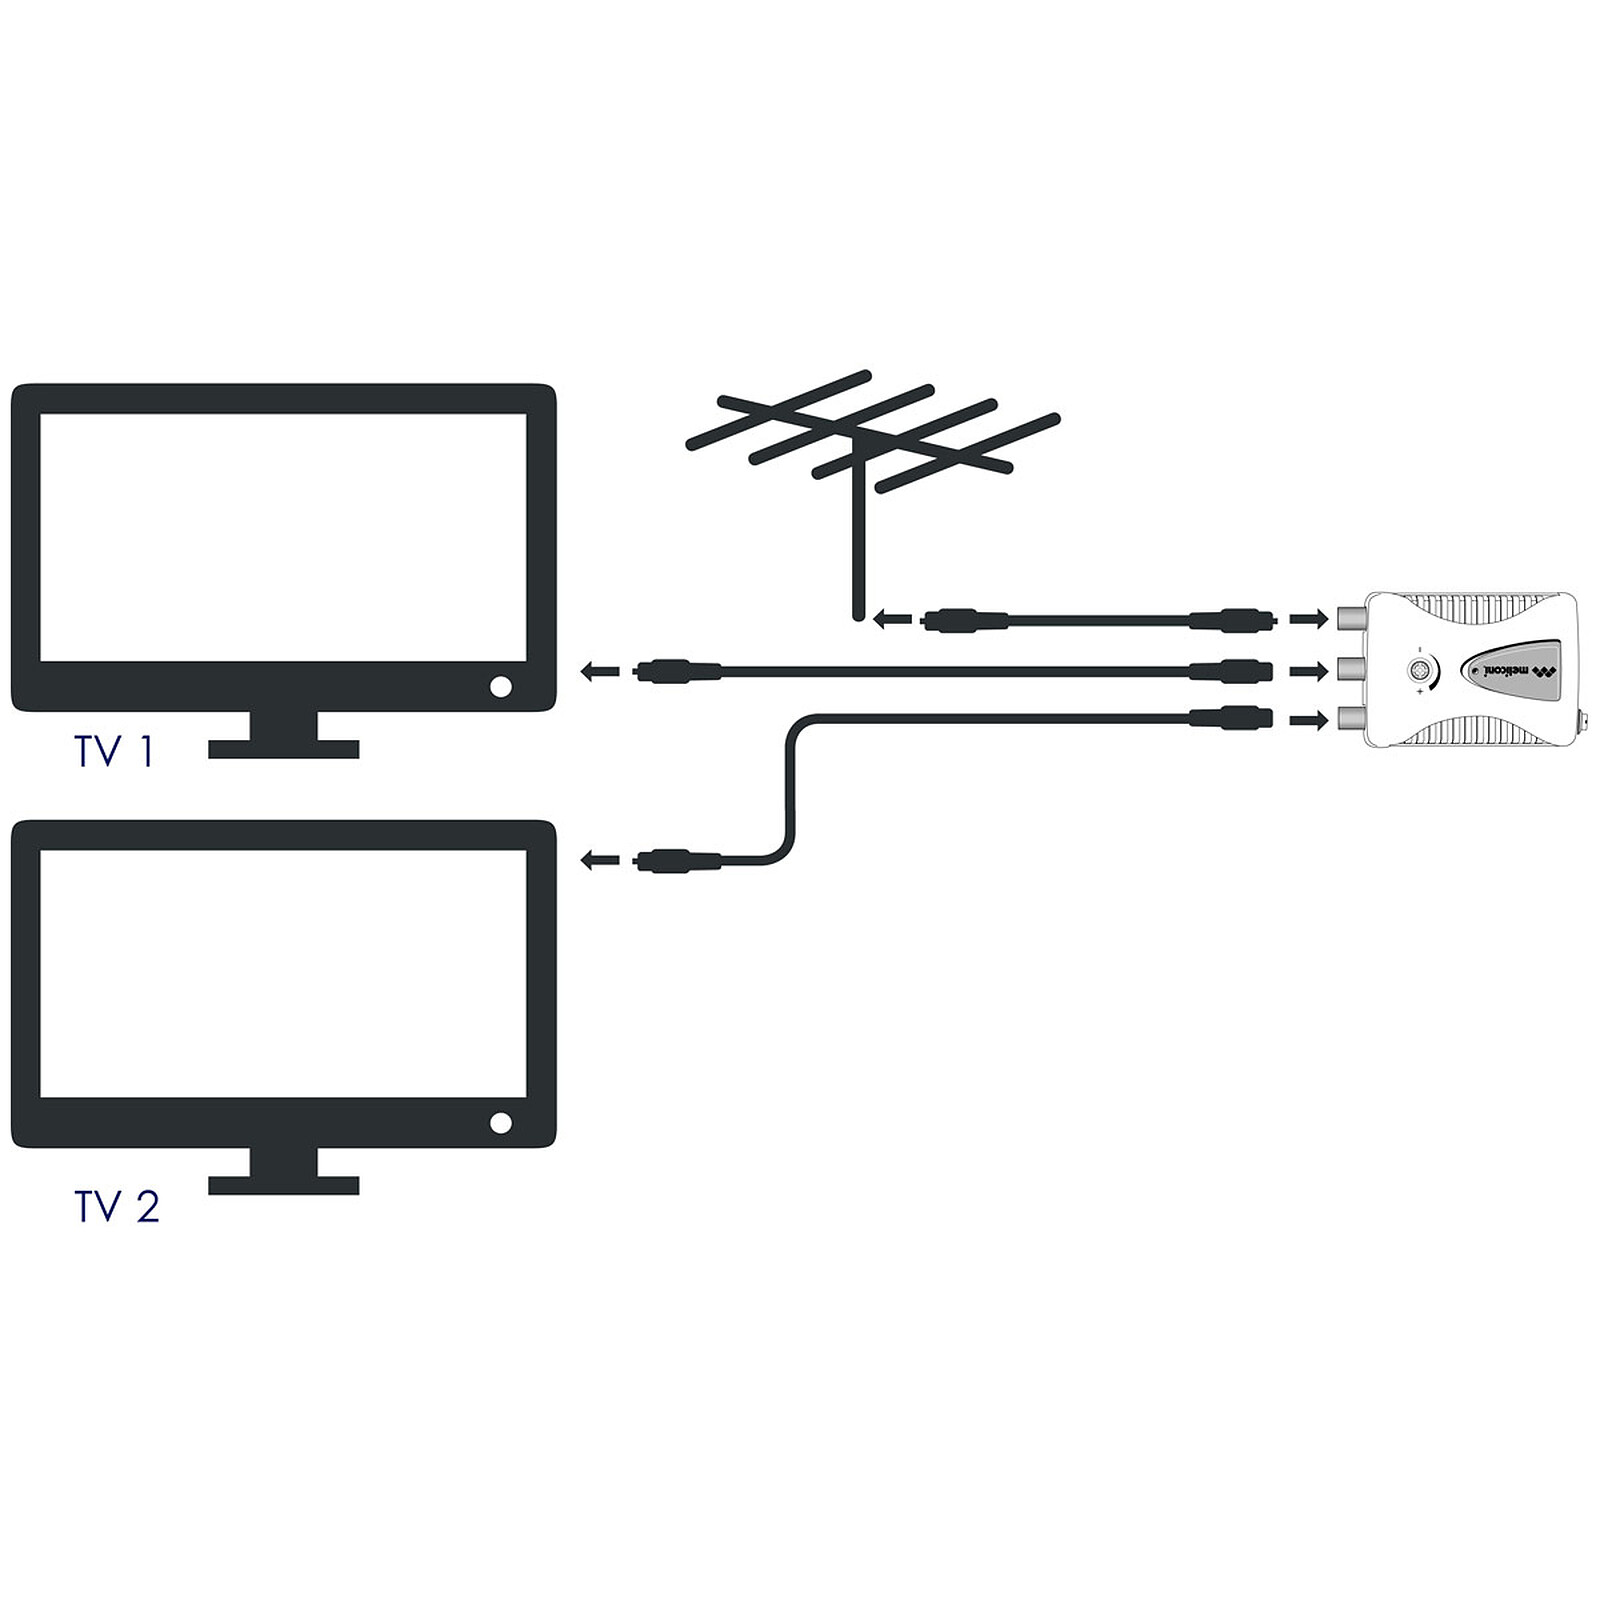 Câble coaxial pour antenne TV / Satellite (rouleau de 25 mètres) - Câble  antenne TV - Garantie 3 ans LDLC